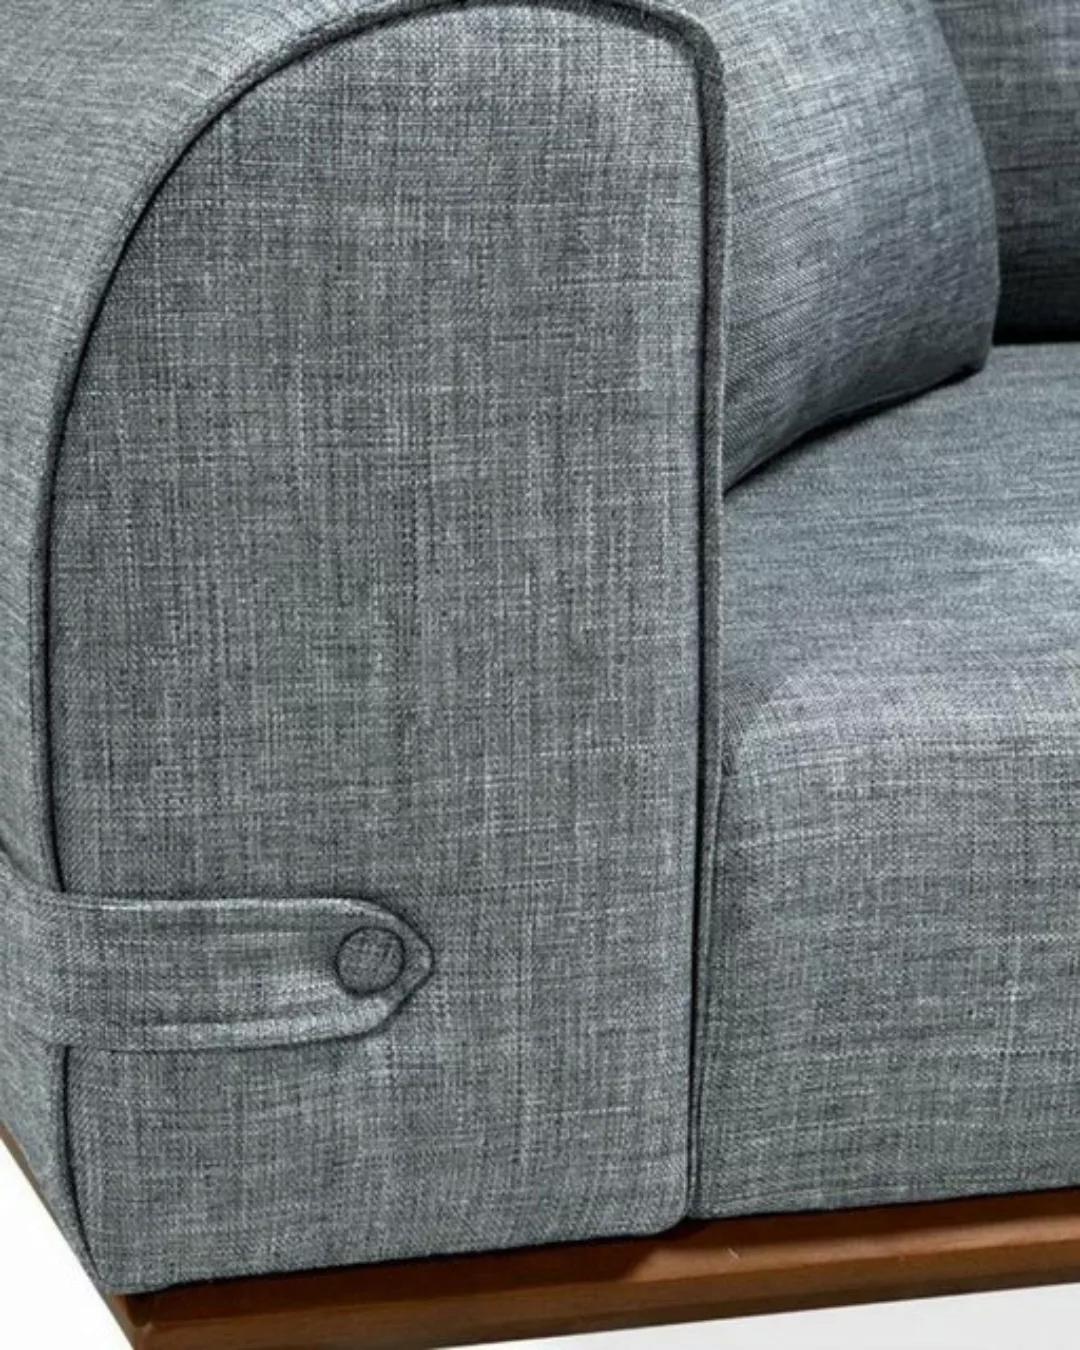 JVmoebel Sofa, Textil Sofa 3 Sitzer Sofa Polster Sofas Design Couch Möbel günstig online kaufen